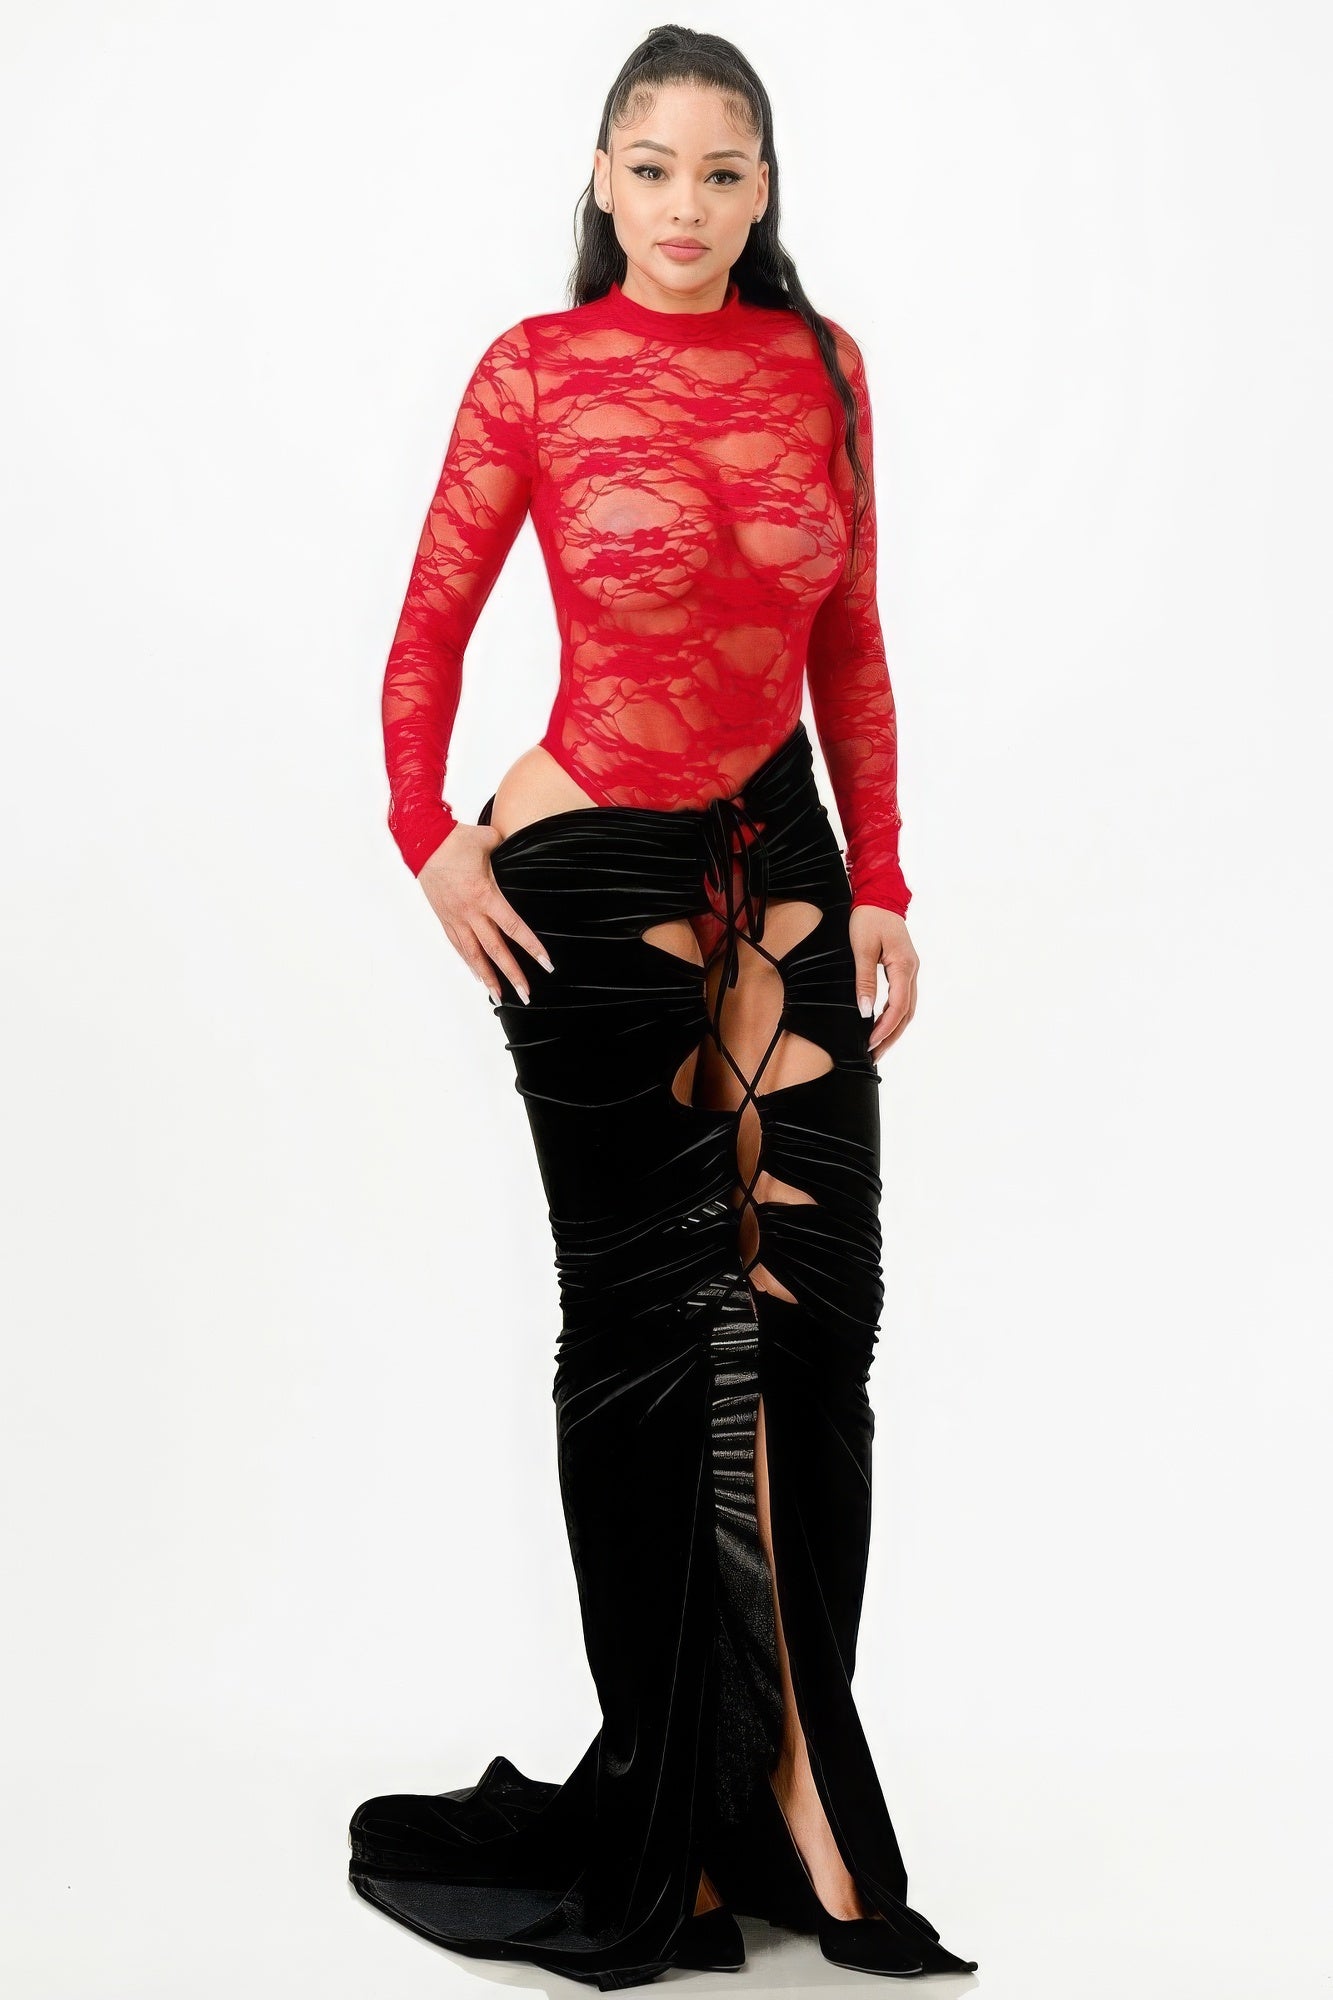 Lace Bodysuit & Mermaid Skirt - Supreme Deals